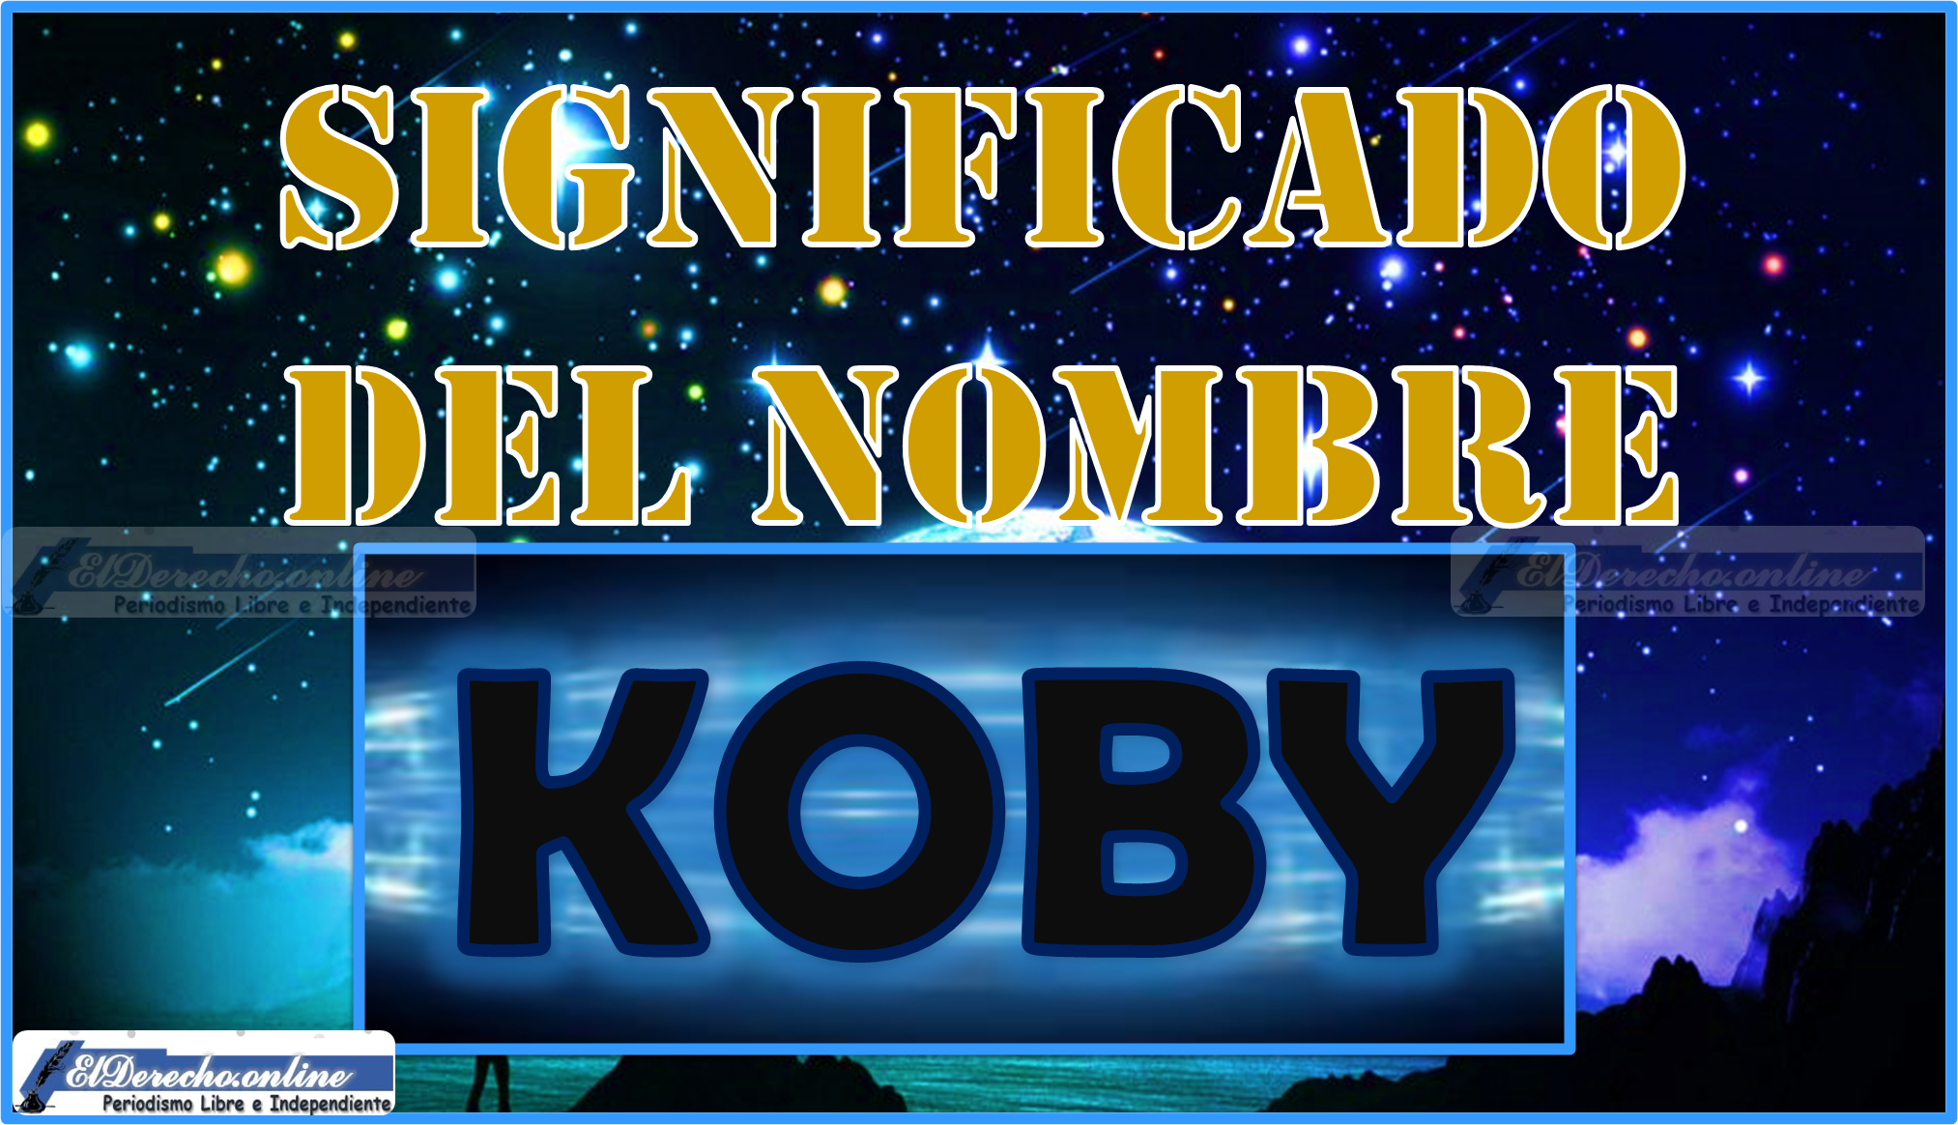 Significado del nombre Koby, su origen y más